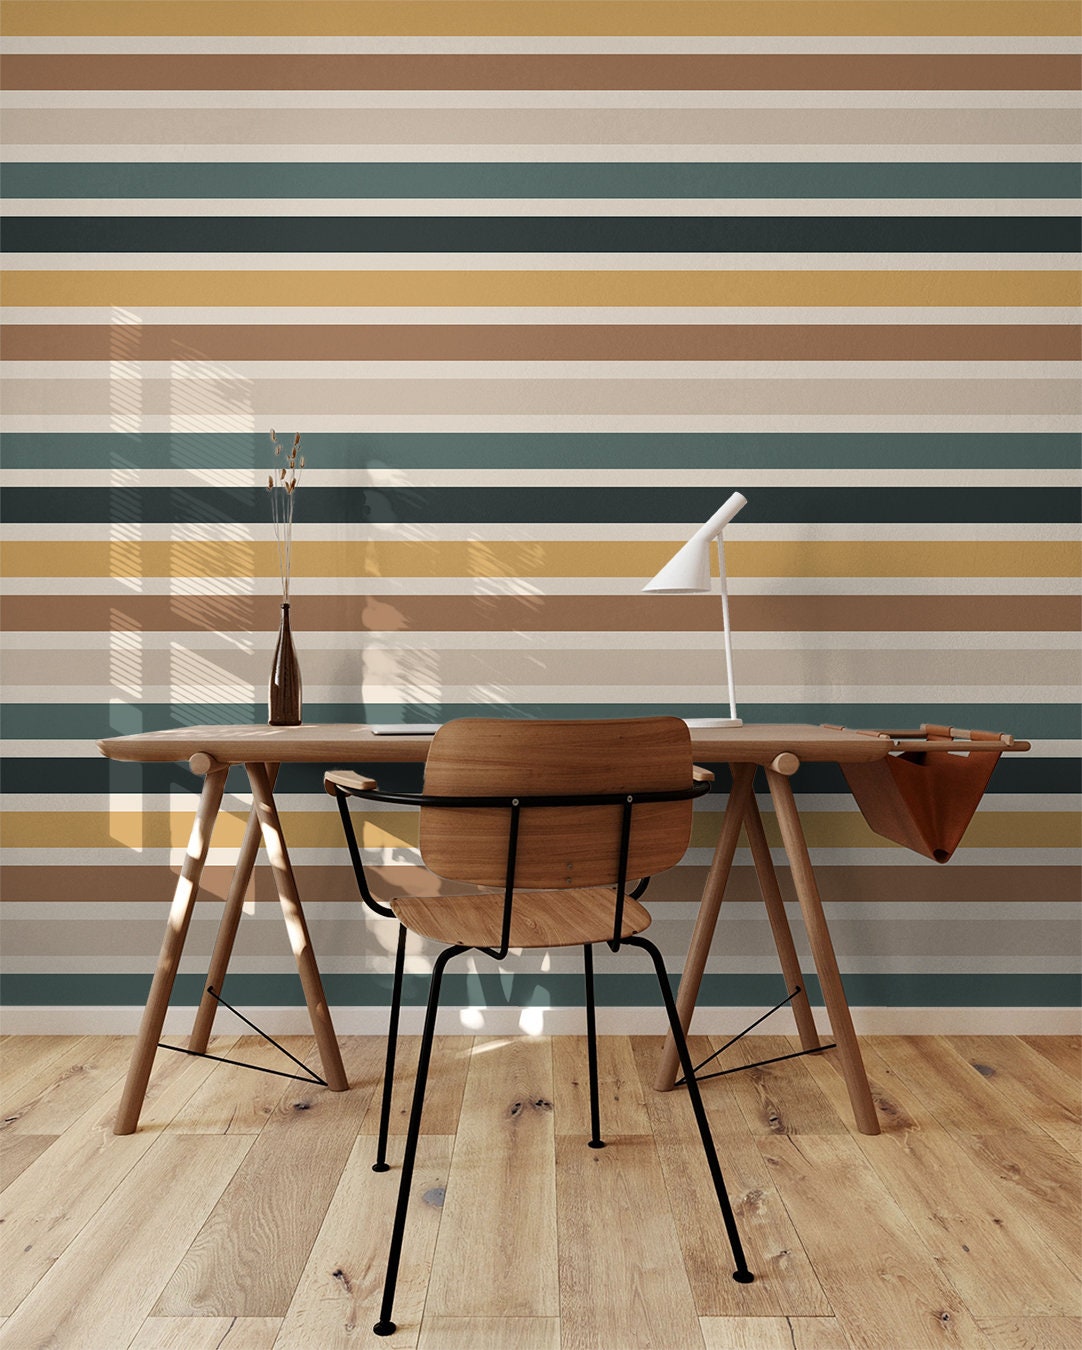 Sunset Stripes Boho Wallpaper | Wallpaper Peel and Stick | Removable Wallpaper | Peel and Stick Wallpaper | Wall Paper Peel And Stick  2379 - JamesAndColors